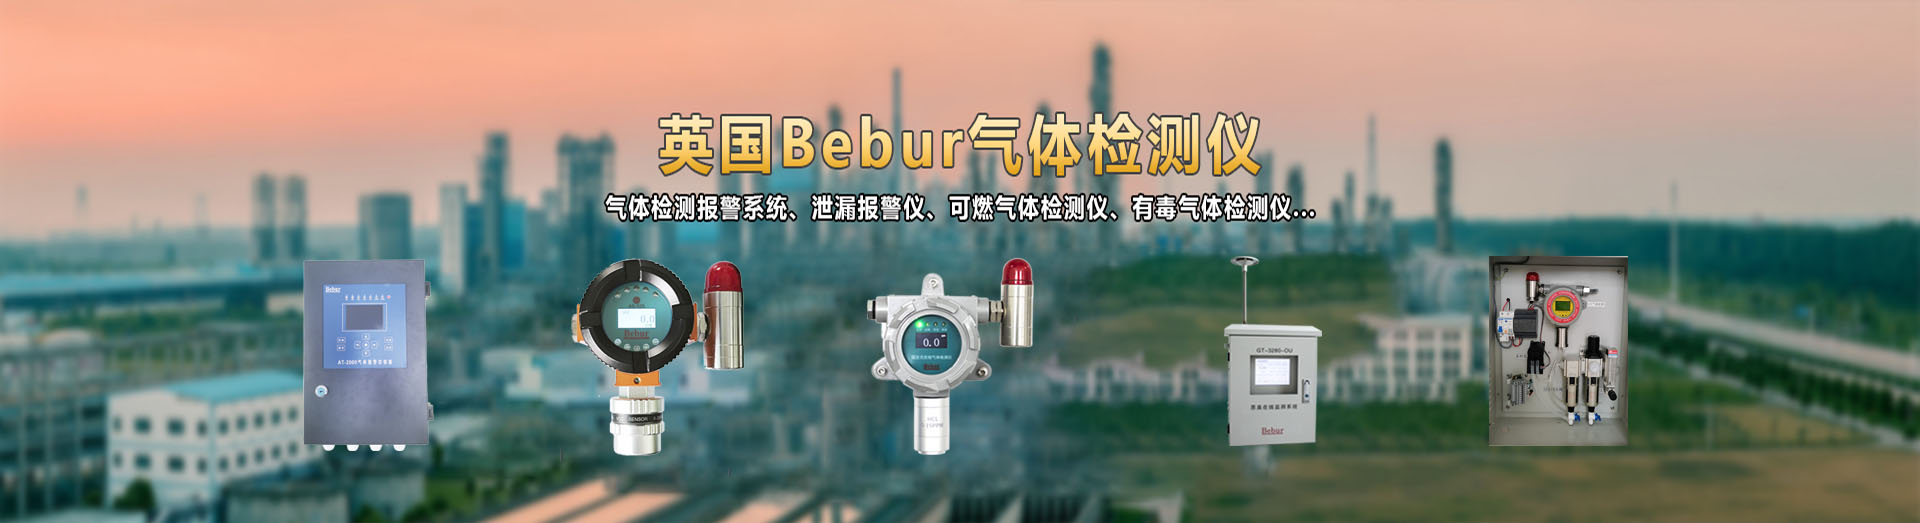 英国Bebur品牌进口voc气体检测仪系列产品